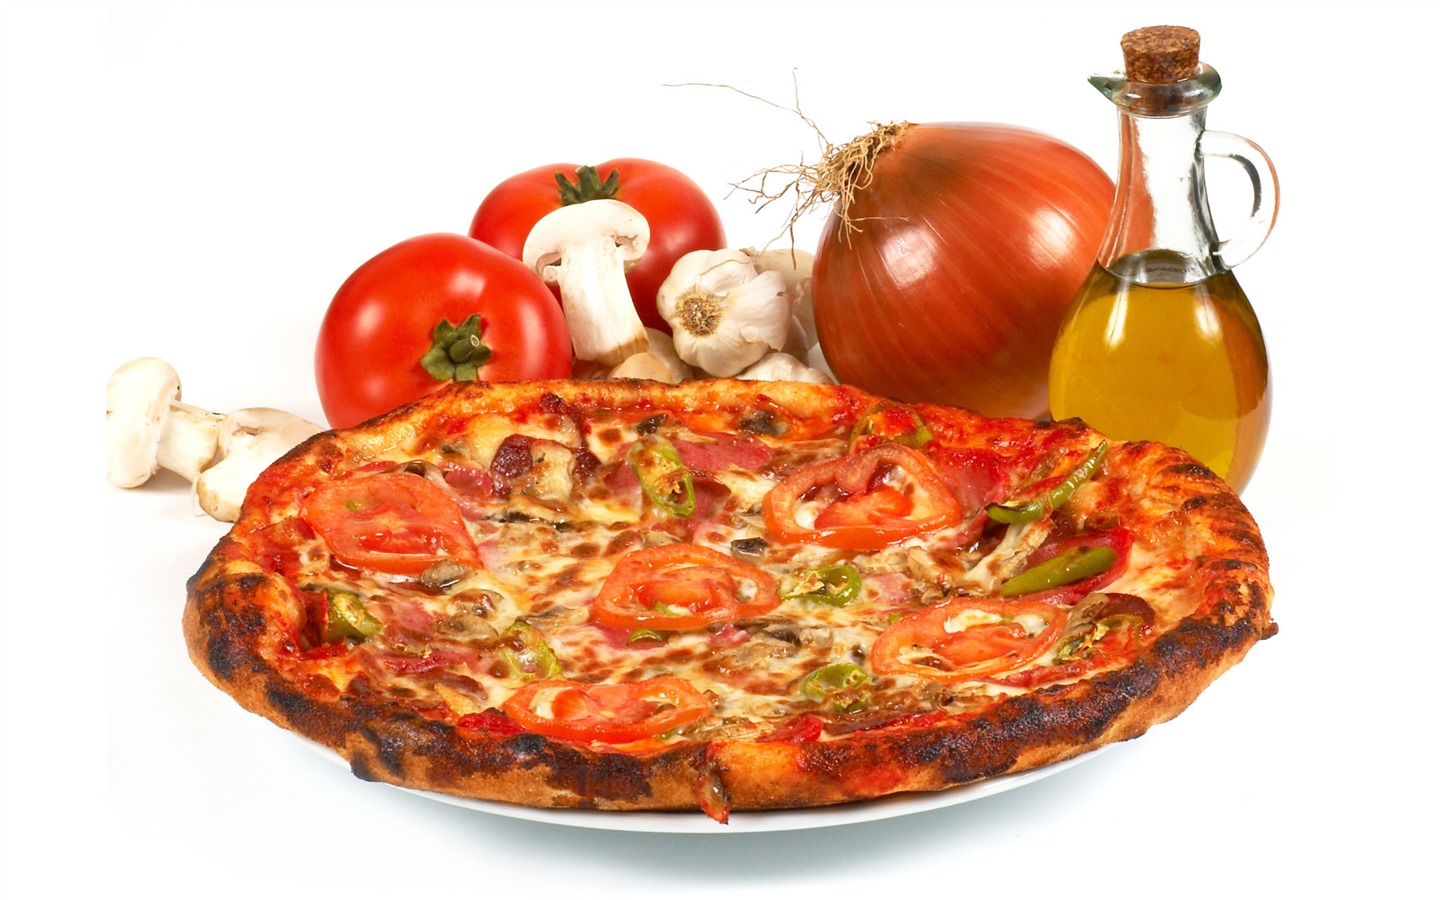 Fondos de pizzerías de Alimentos (4) #16 - 1440x900